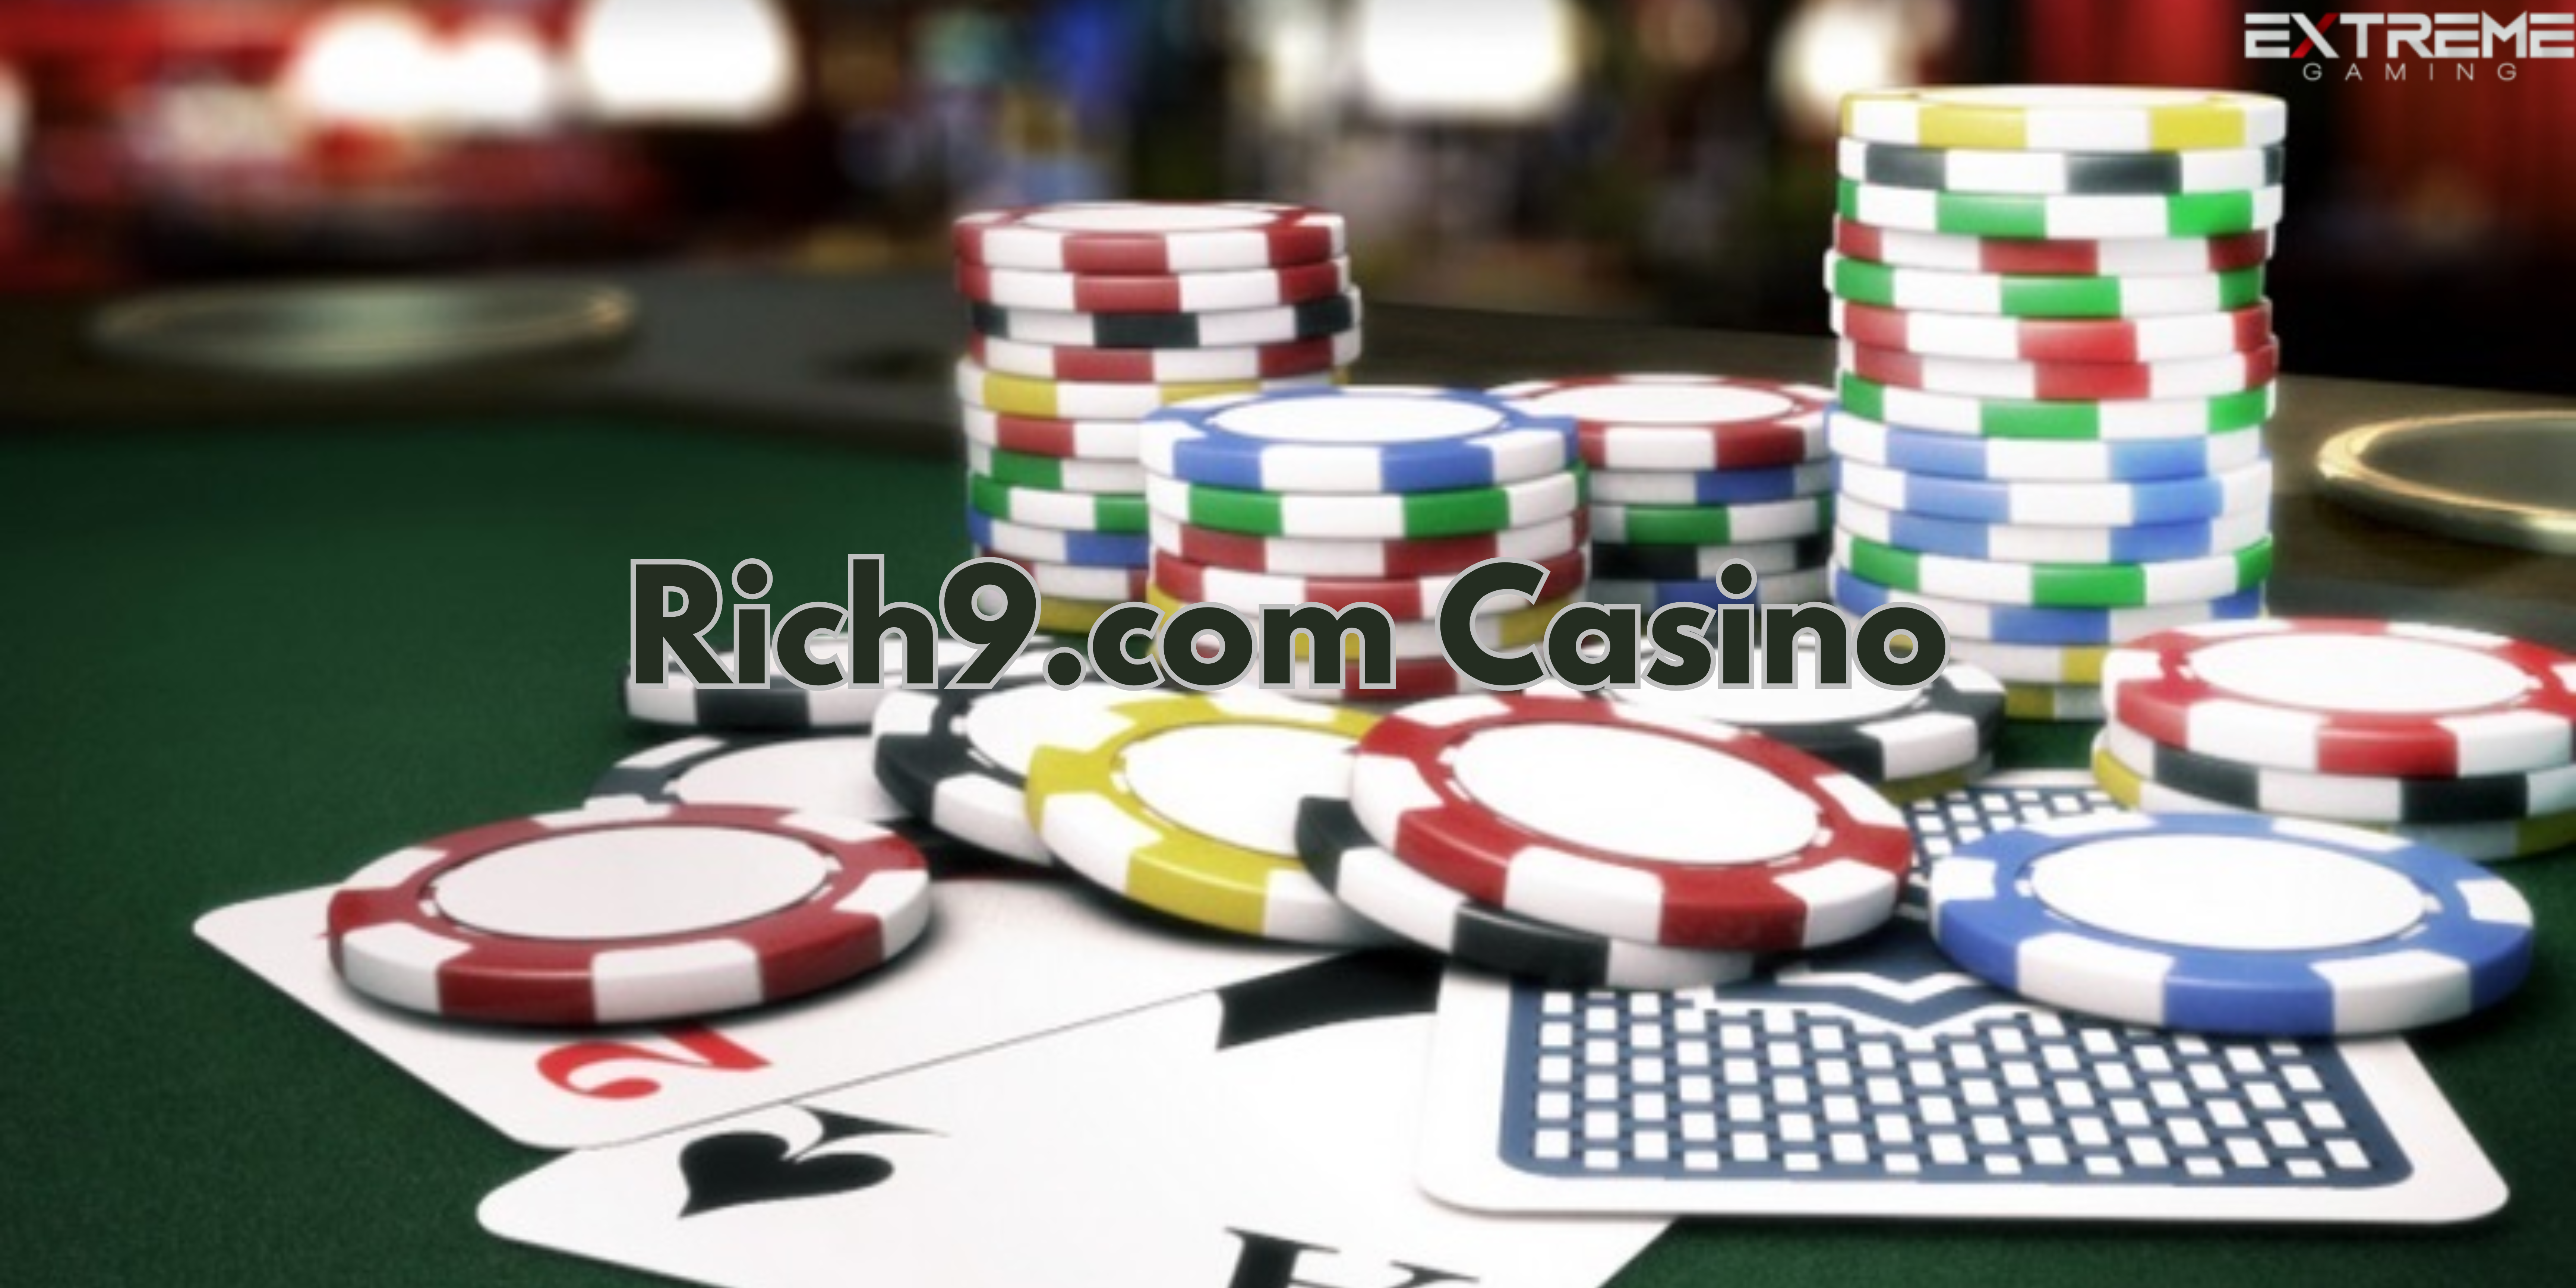 Rich9.com Casino